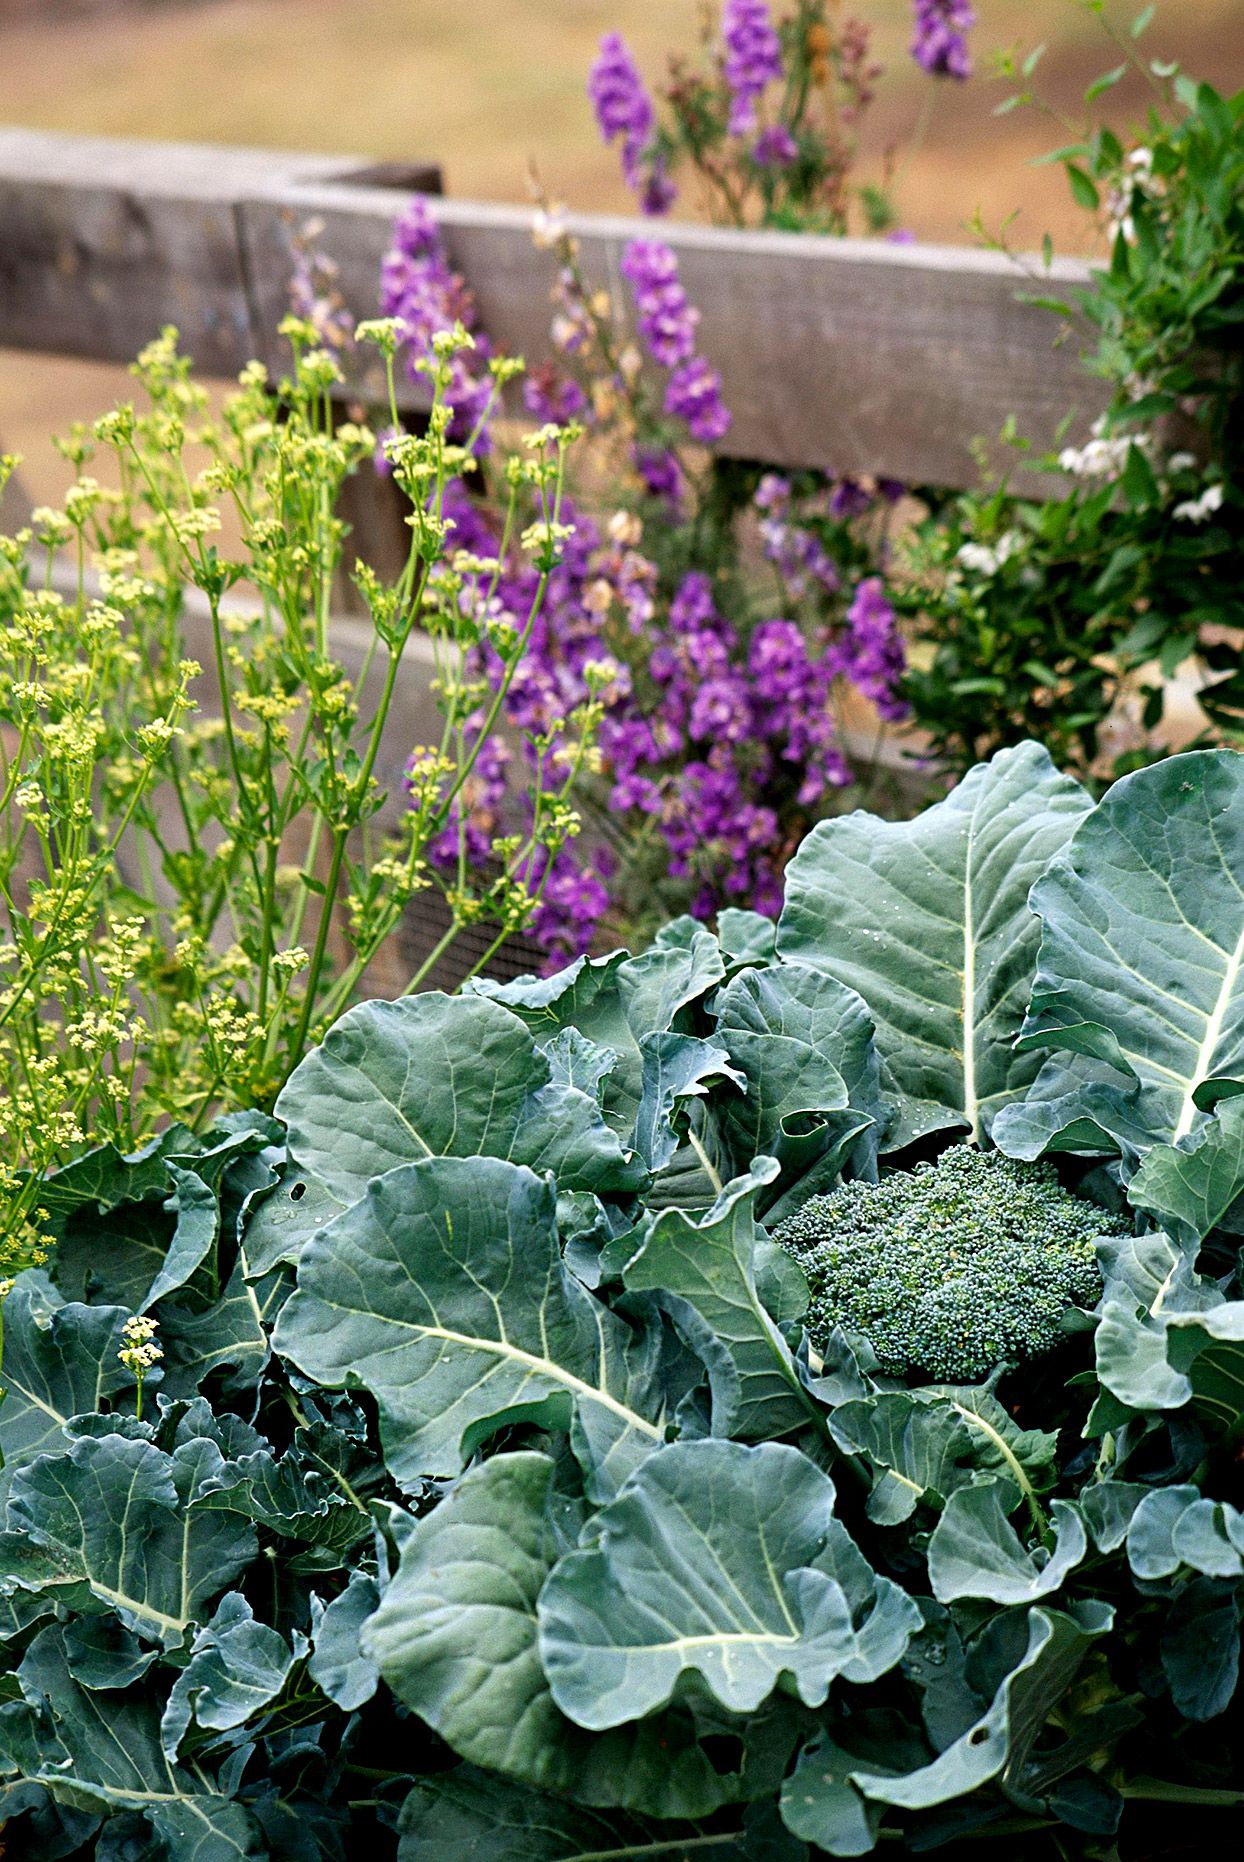 Brocoli et fleurs violettes dans un jardin